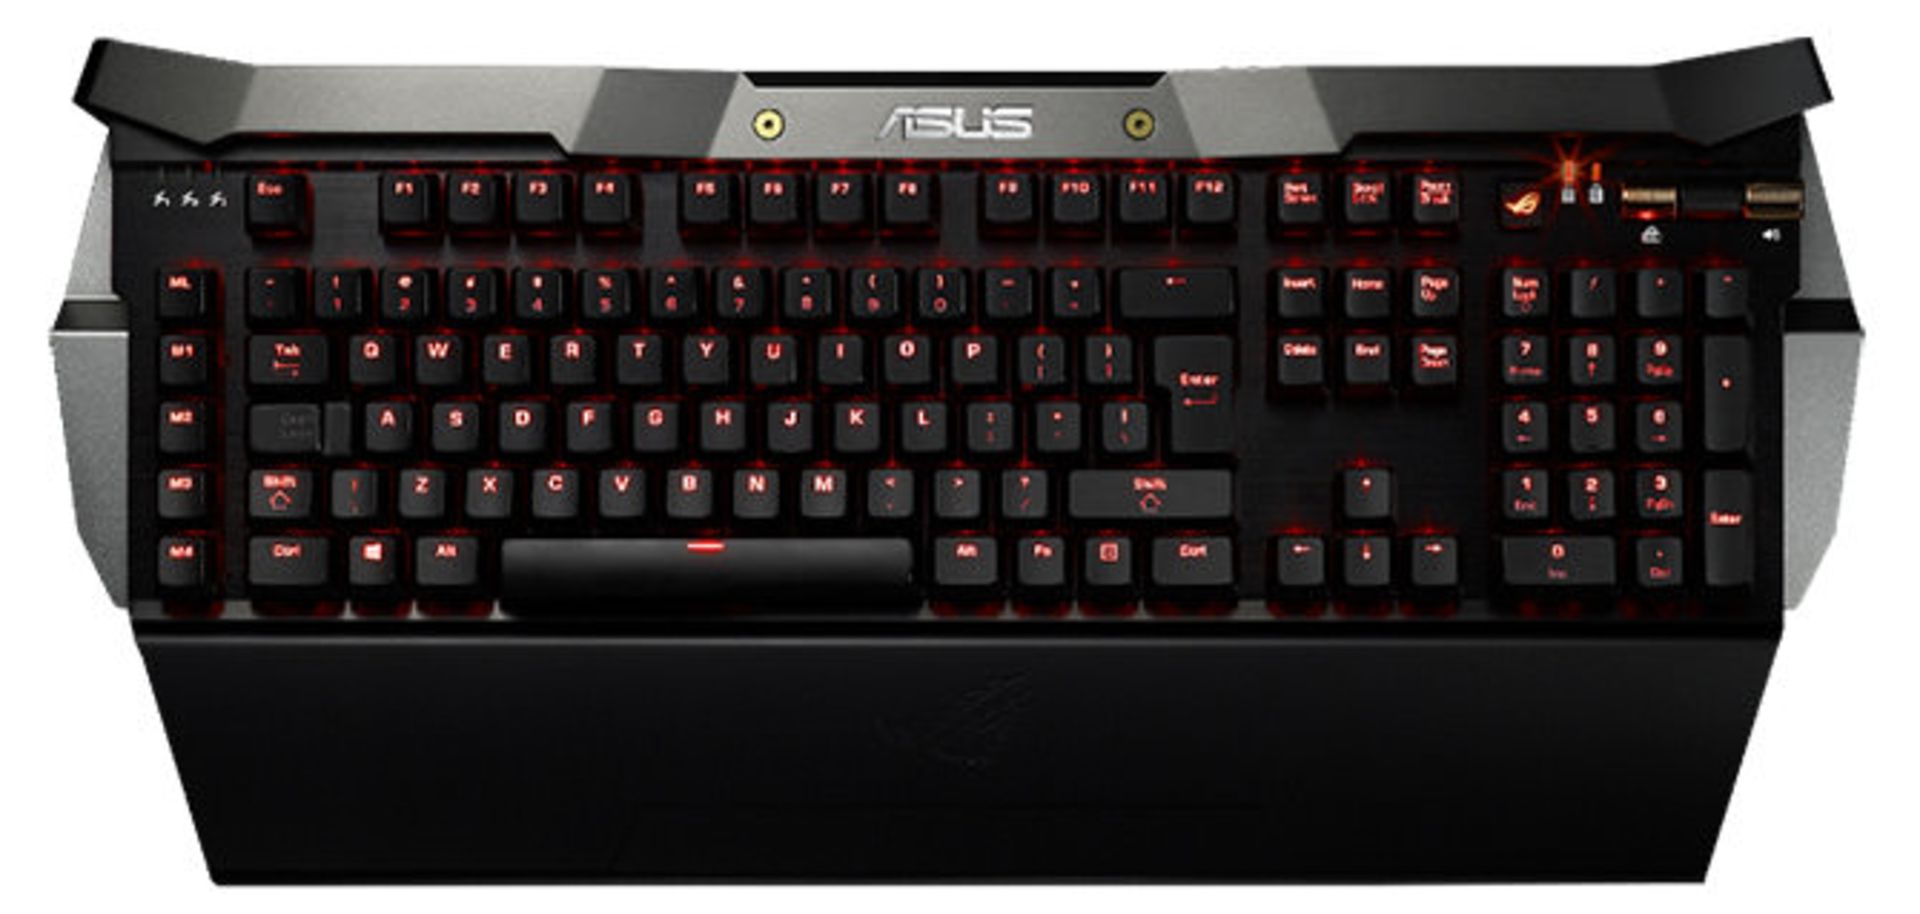 ASUS-ROG-GK2000-Gaming-Keyboard